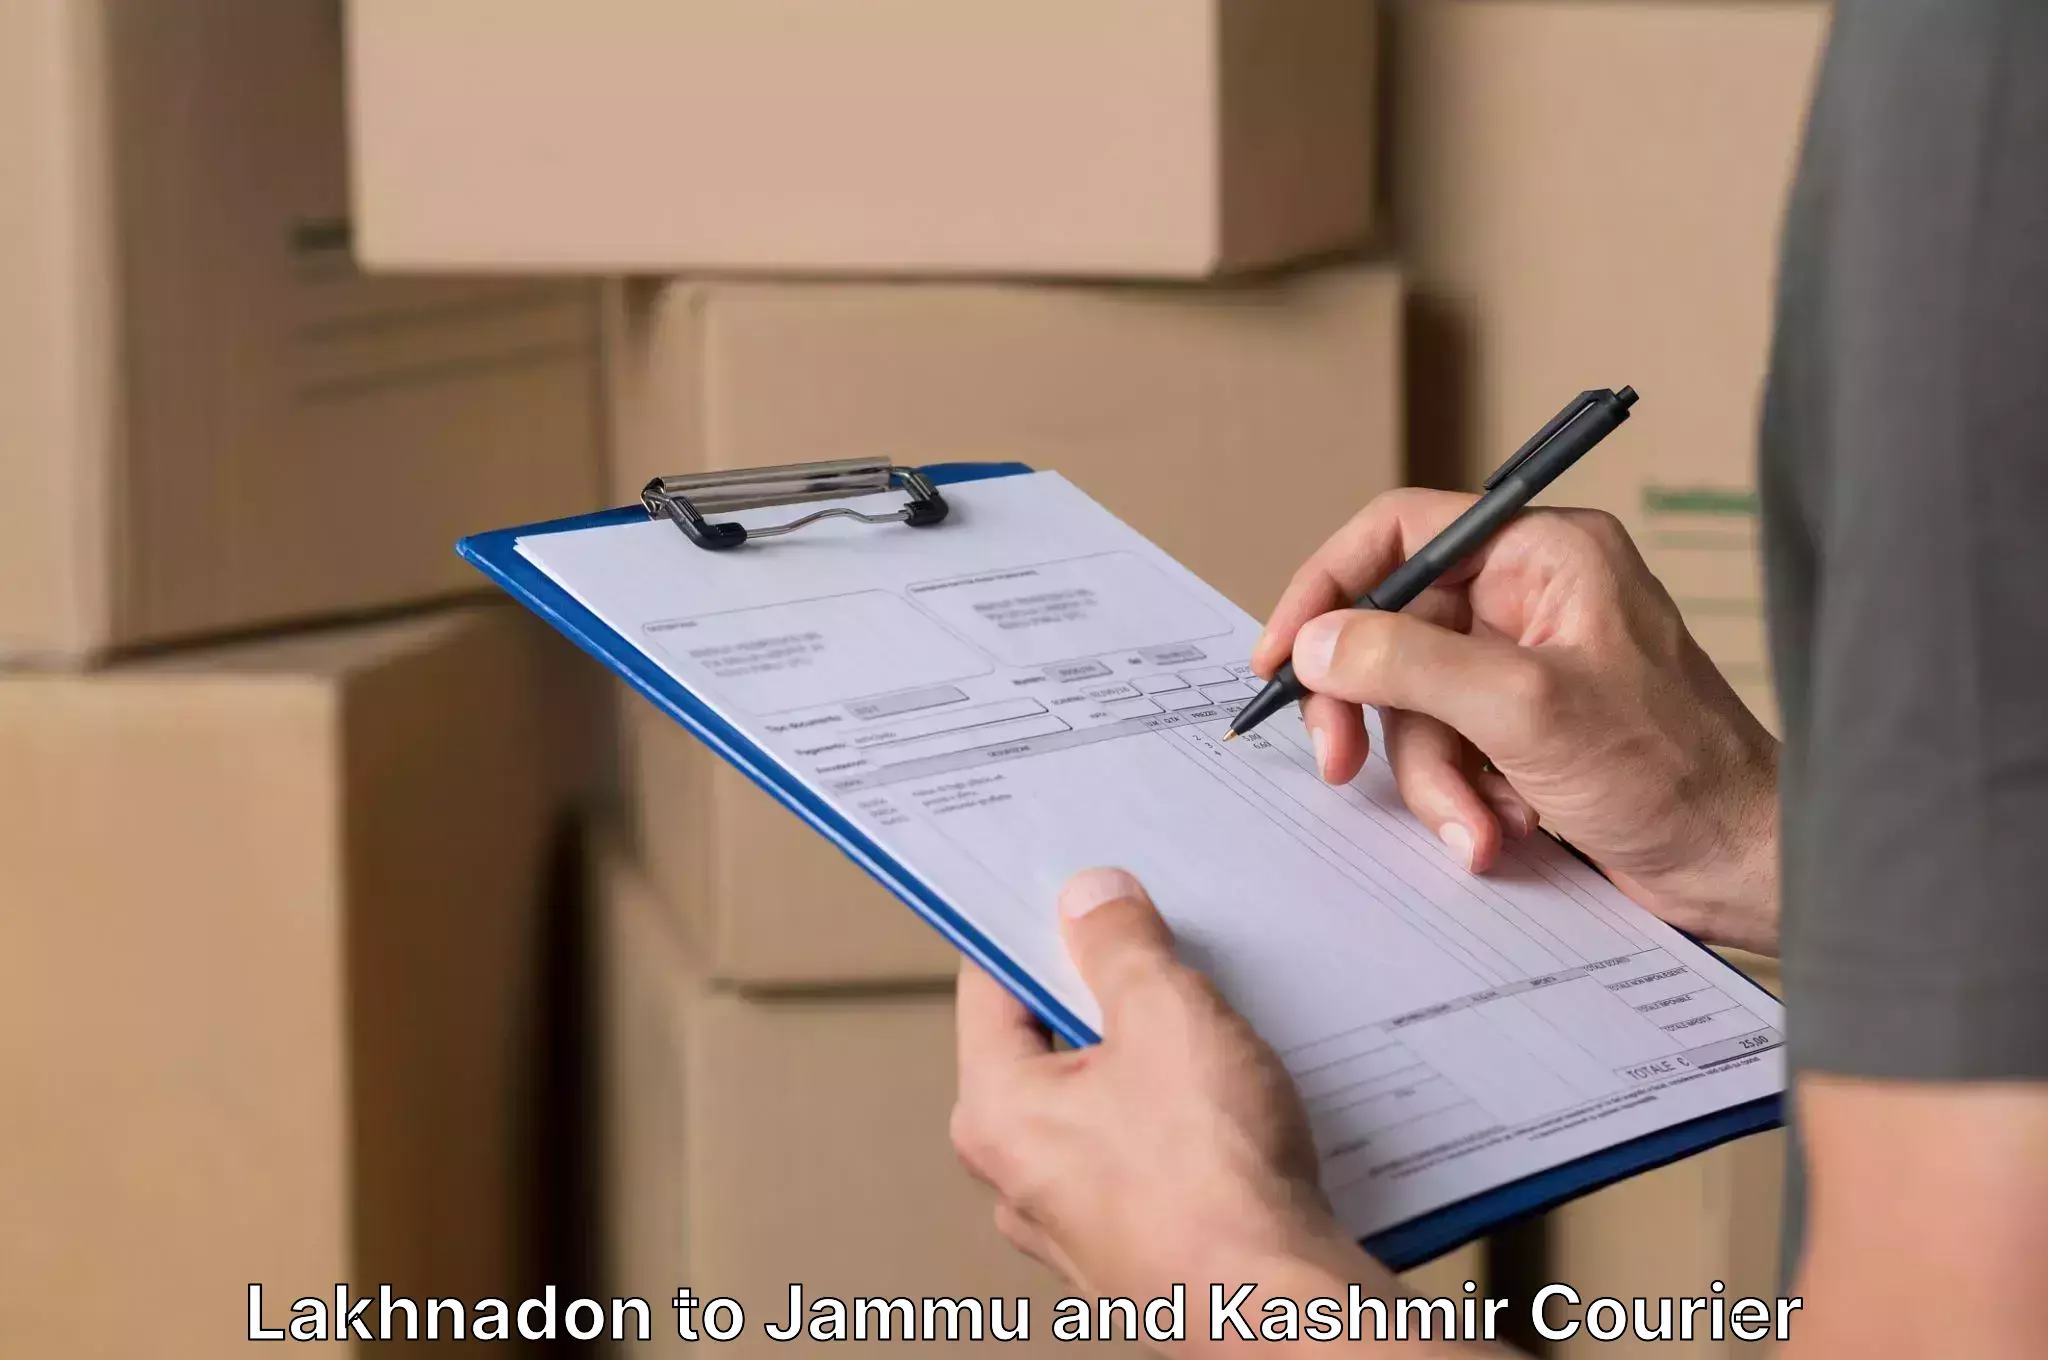 Furniture relocation services Lakhnadon to Srinagar Kashmir